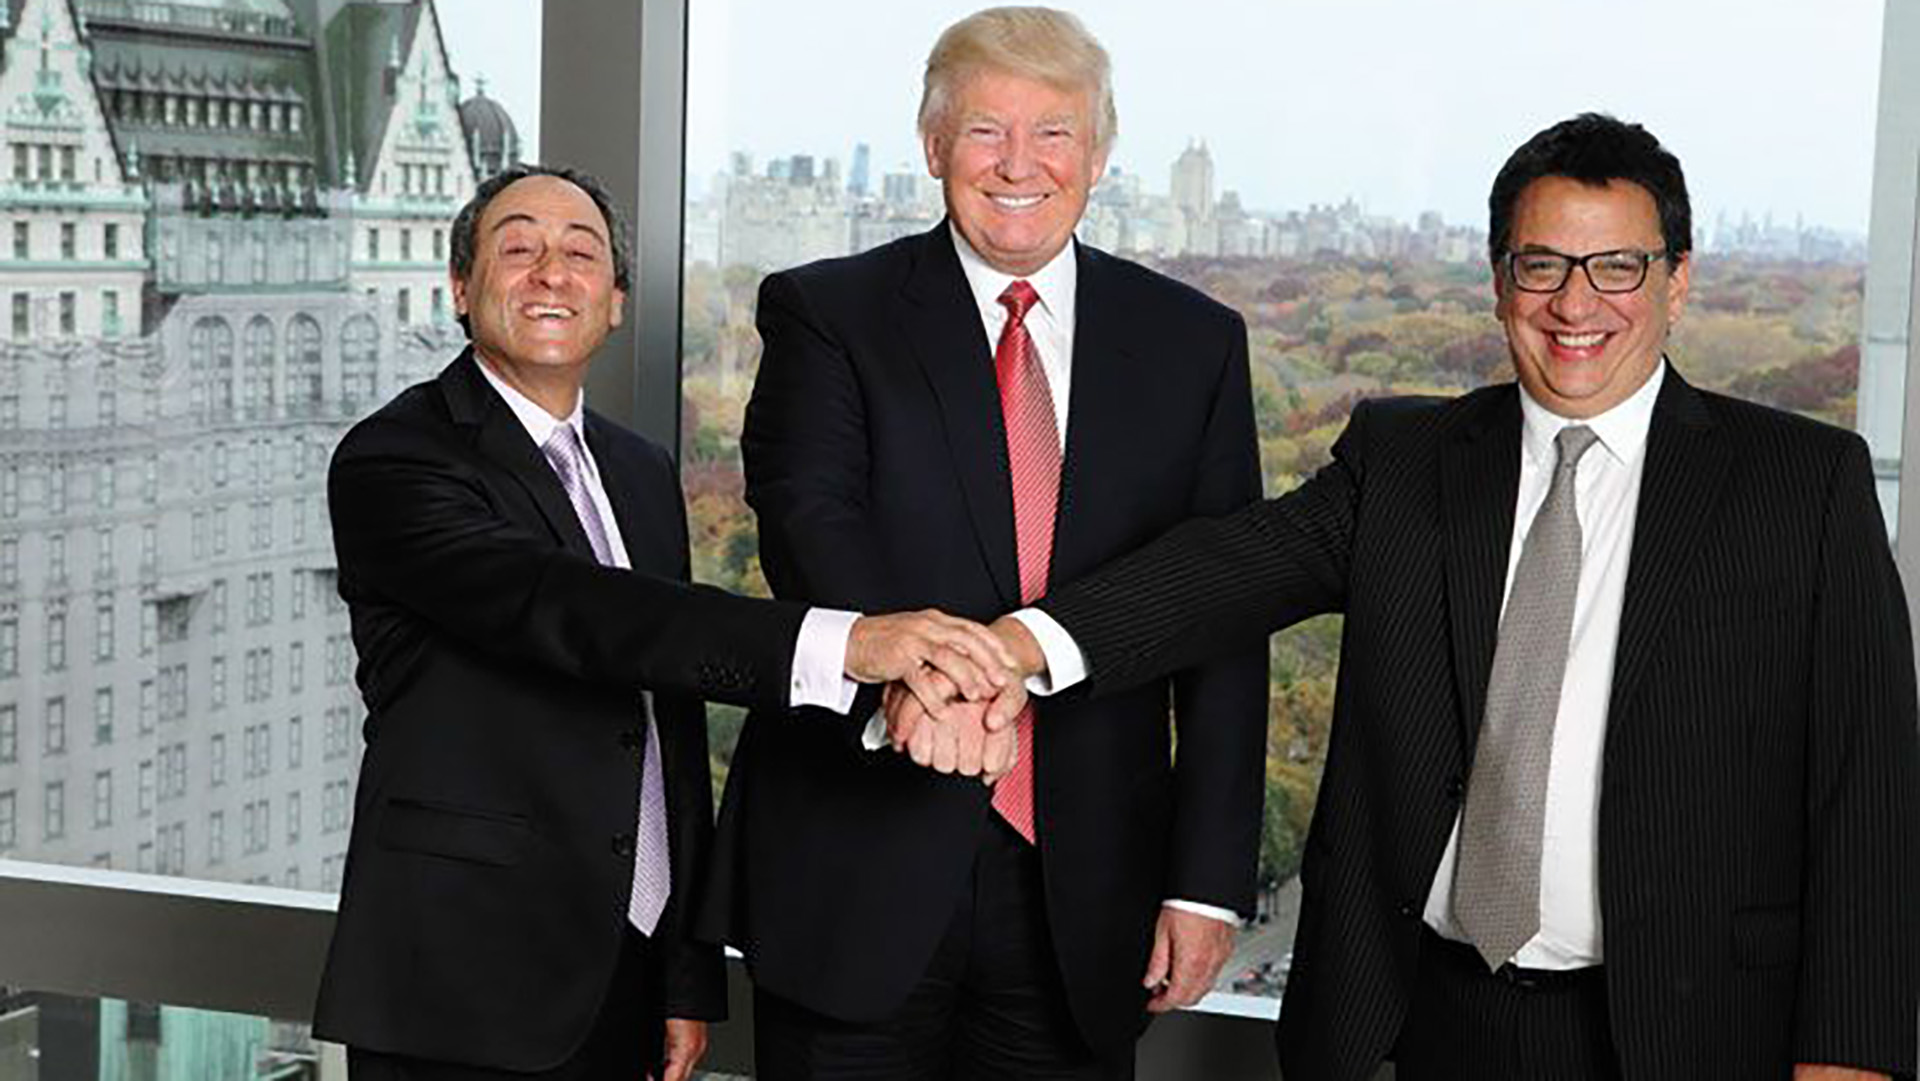 Moisés Yellati y Felipe Yaryura, los desarrolladores argentinos detrás de la Trump Tower Punta del Este, con Donald Trump